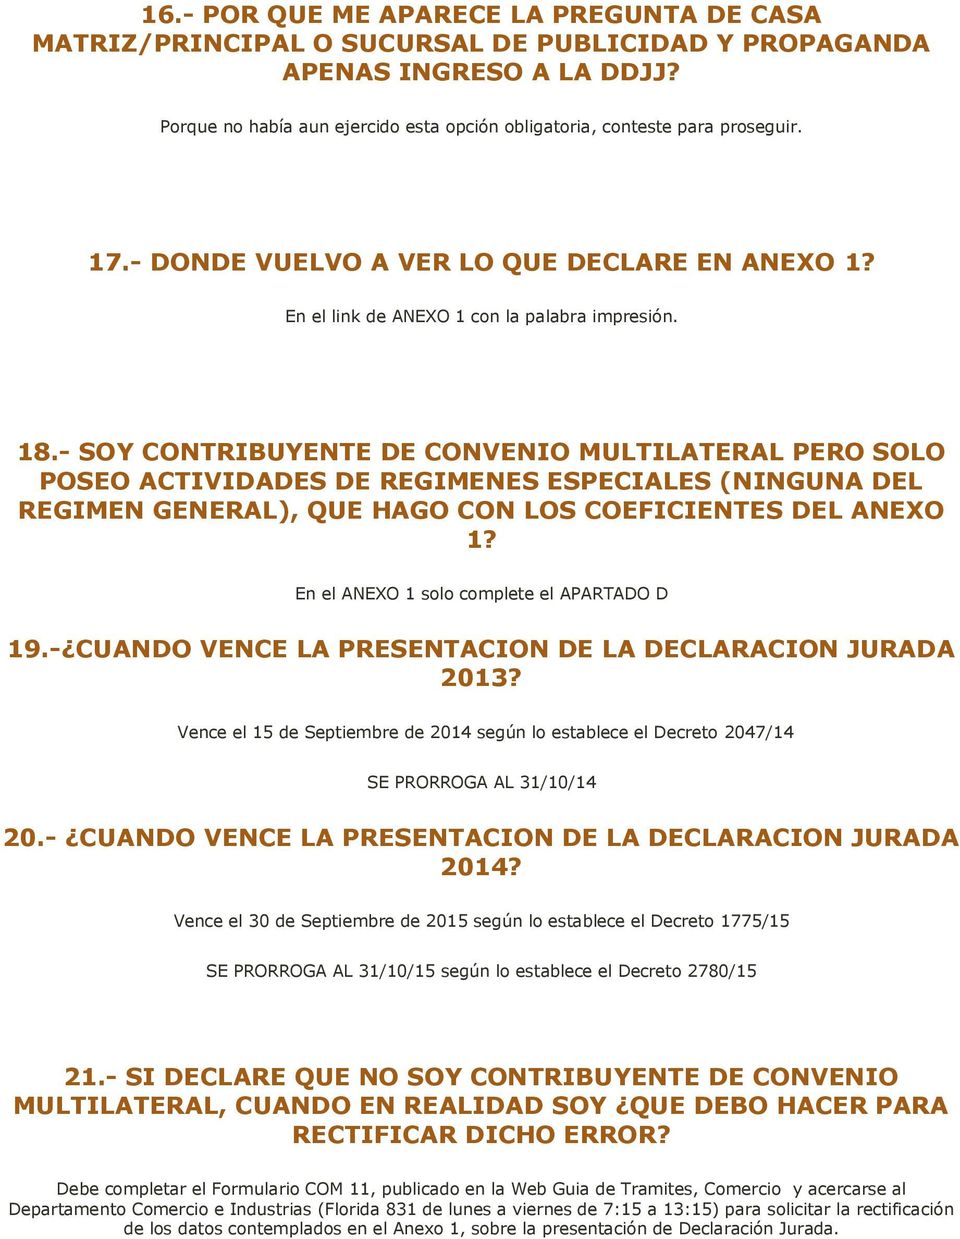 - SOY CONTRIBUYENTE DE CONVENIO MULTILATERAL PERO SOLO POSEO ACTIVIDADES DE REGIMENES ESPECIALES (NINGUNA DEL REGIMEN GENERAL), QUE HAGO CON LOS COEFICIENTES DEL ANEXO 1?